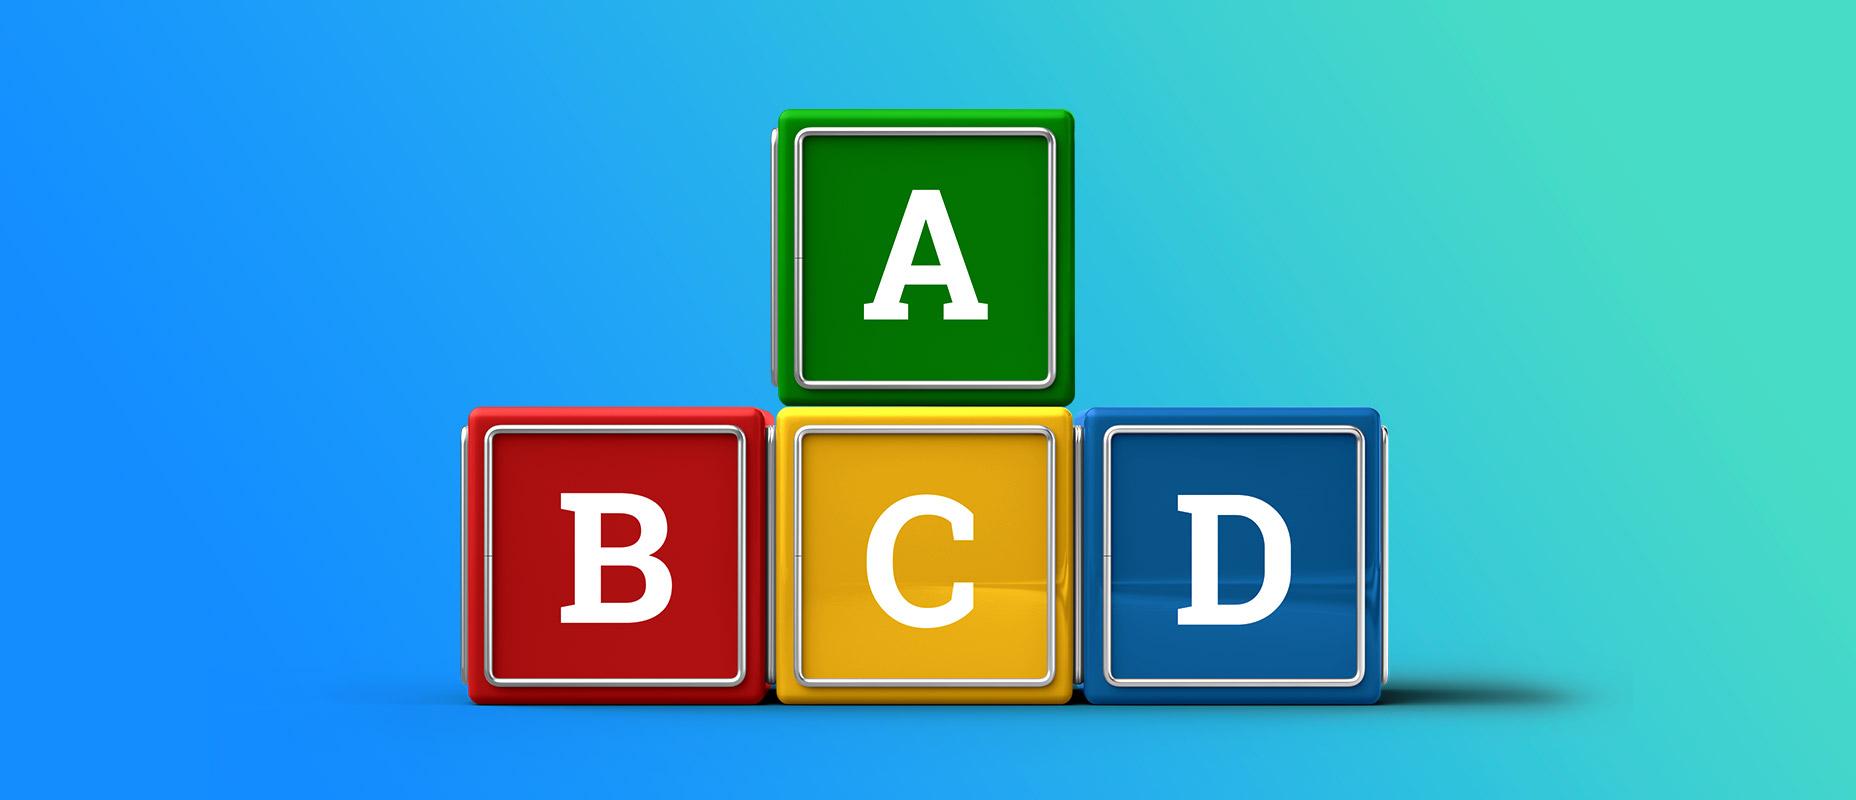 วิธีการแลกเปลี่ยนรูปแบบ ABCD